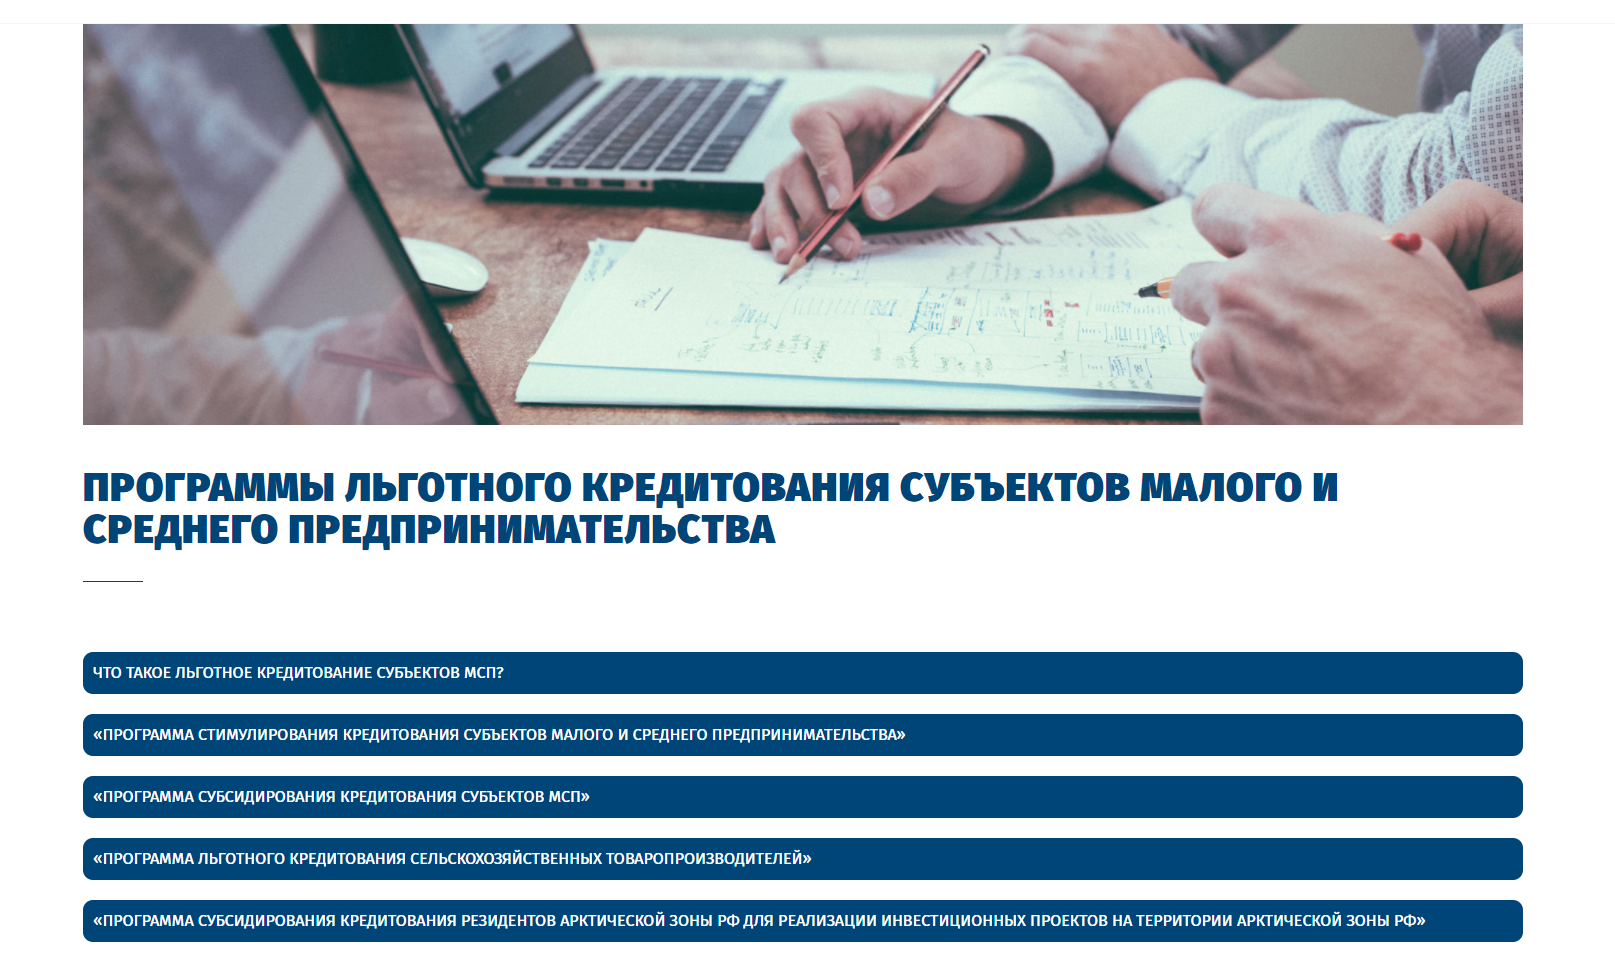 Агентство регионального развития: четыре вида льготных кредитов для бизнеса в Архангельской области 